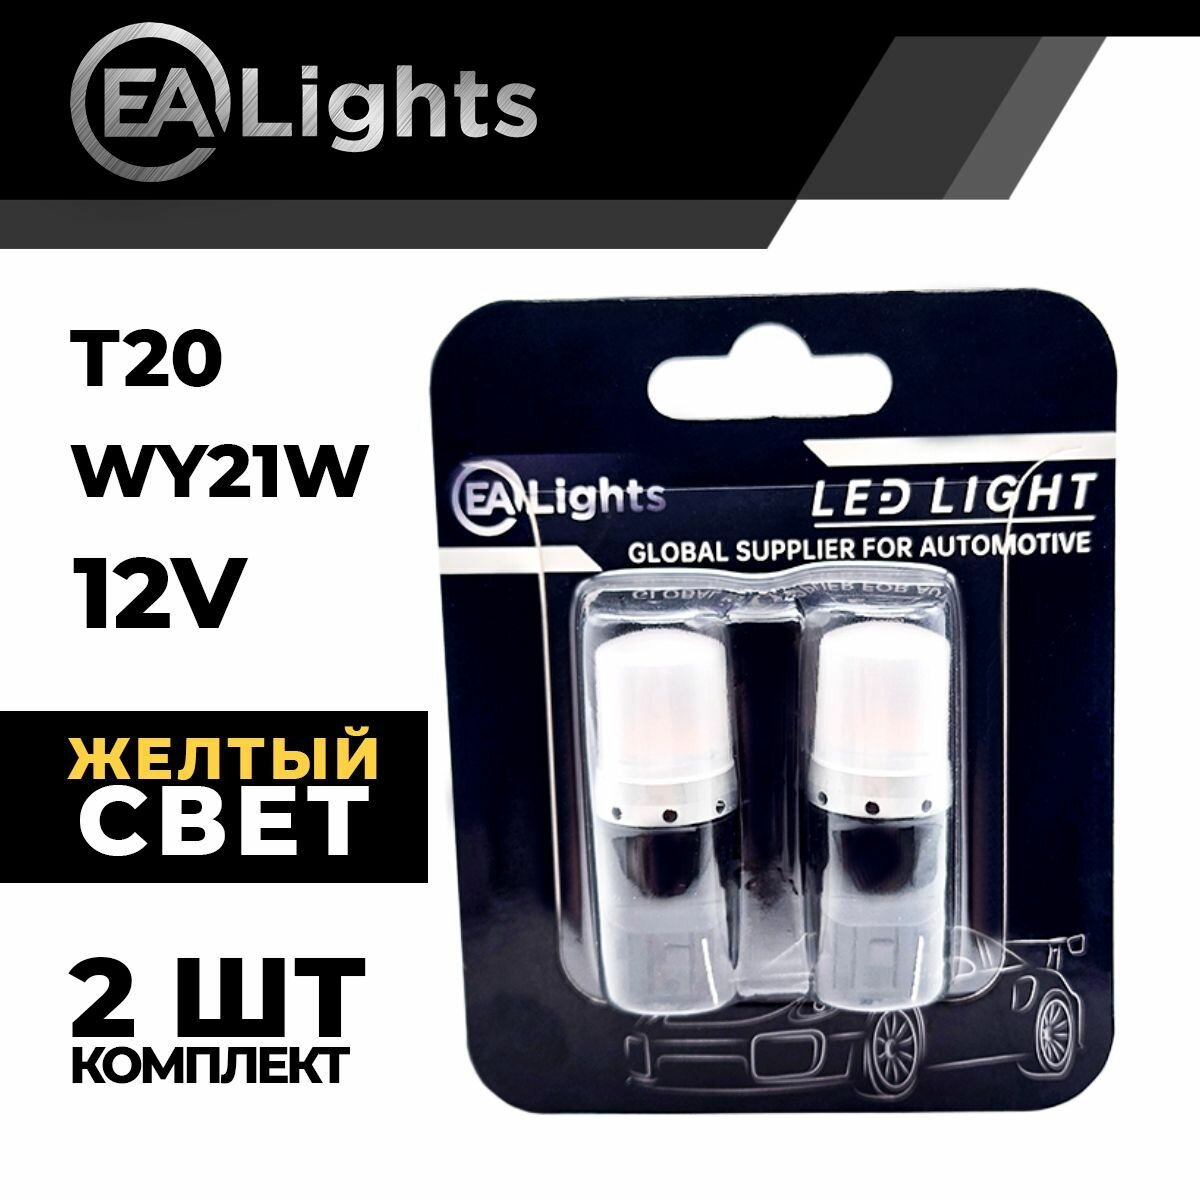 Автомобильная светодиодная LED лампа T20 WY21W (чип 2835-9) для указателей поворота 12в желтый свет 2 шт